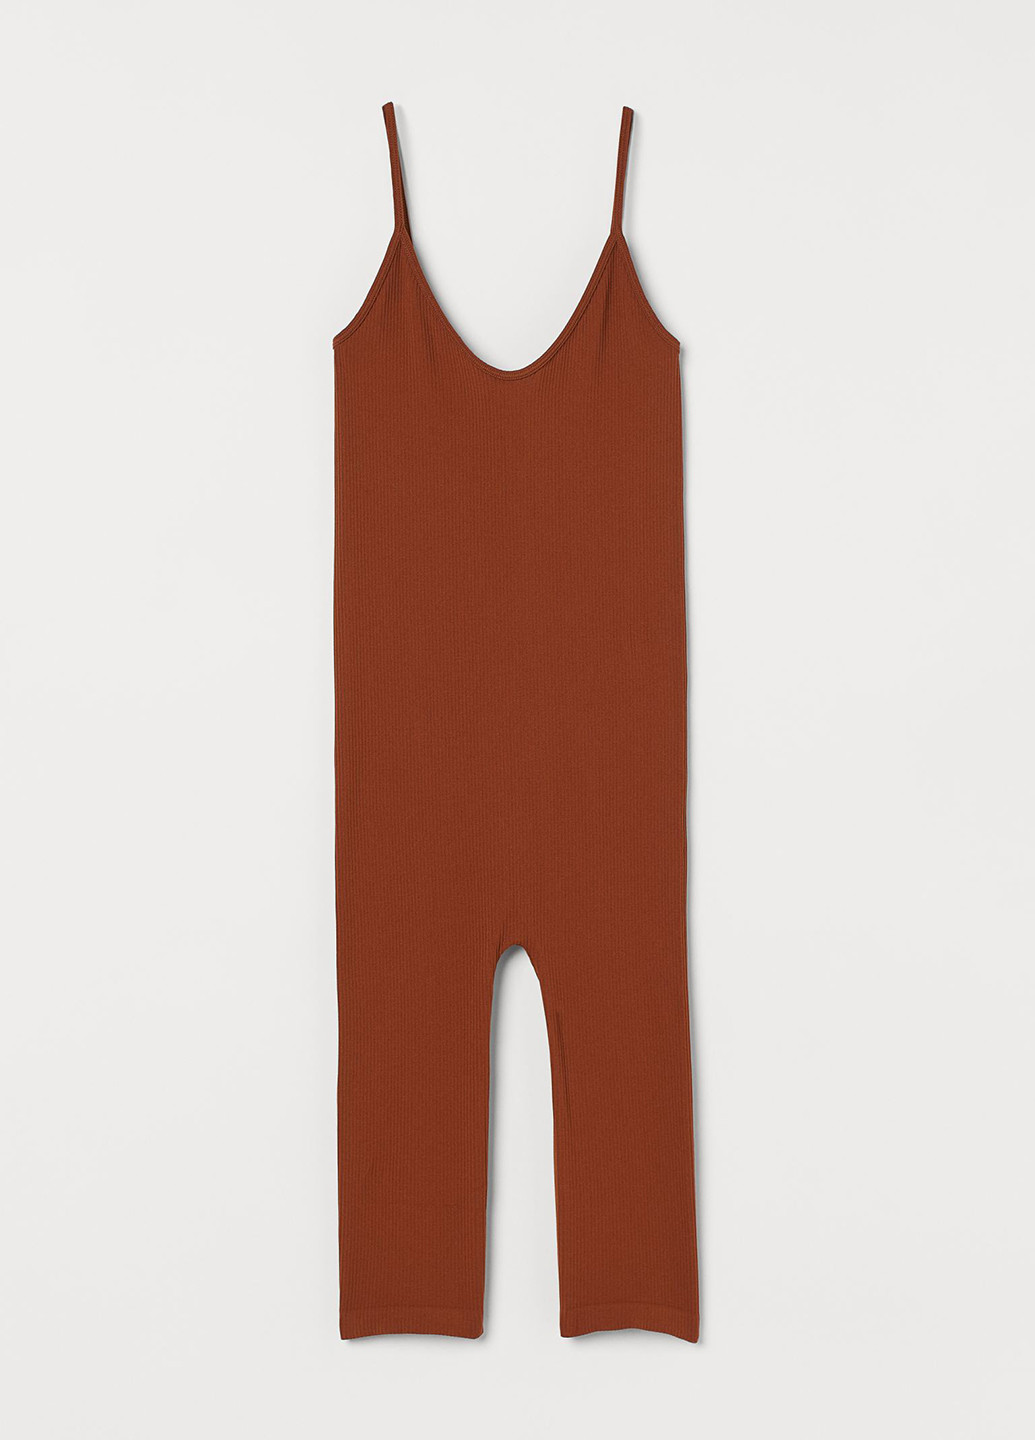 Комбинезон H&M комбинезон-шорты однотонный коричневый кэжуал полиамид